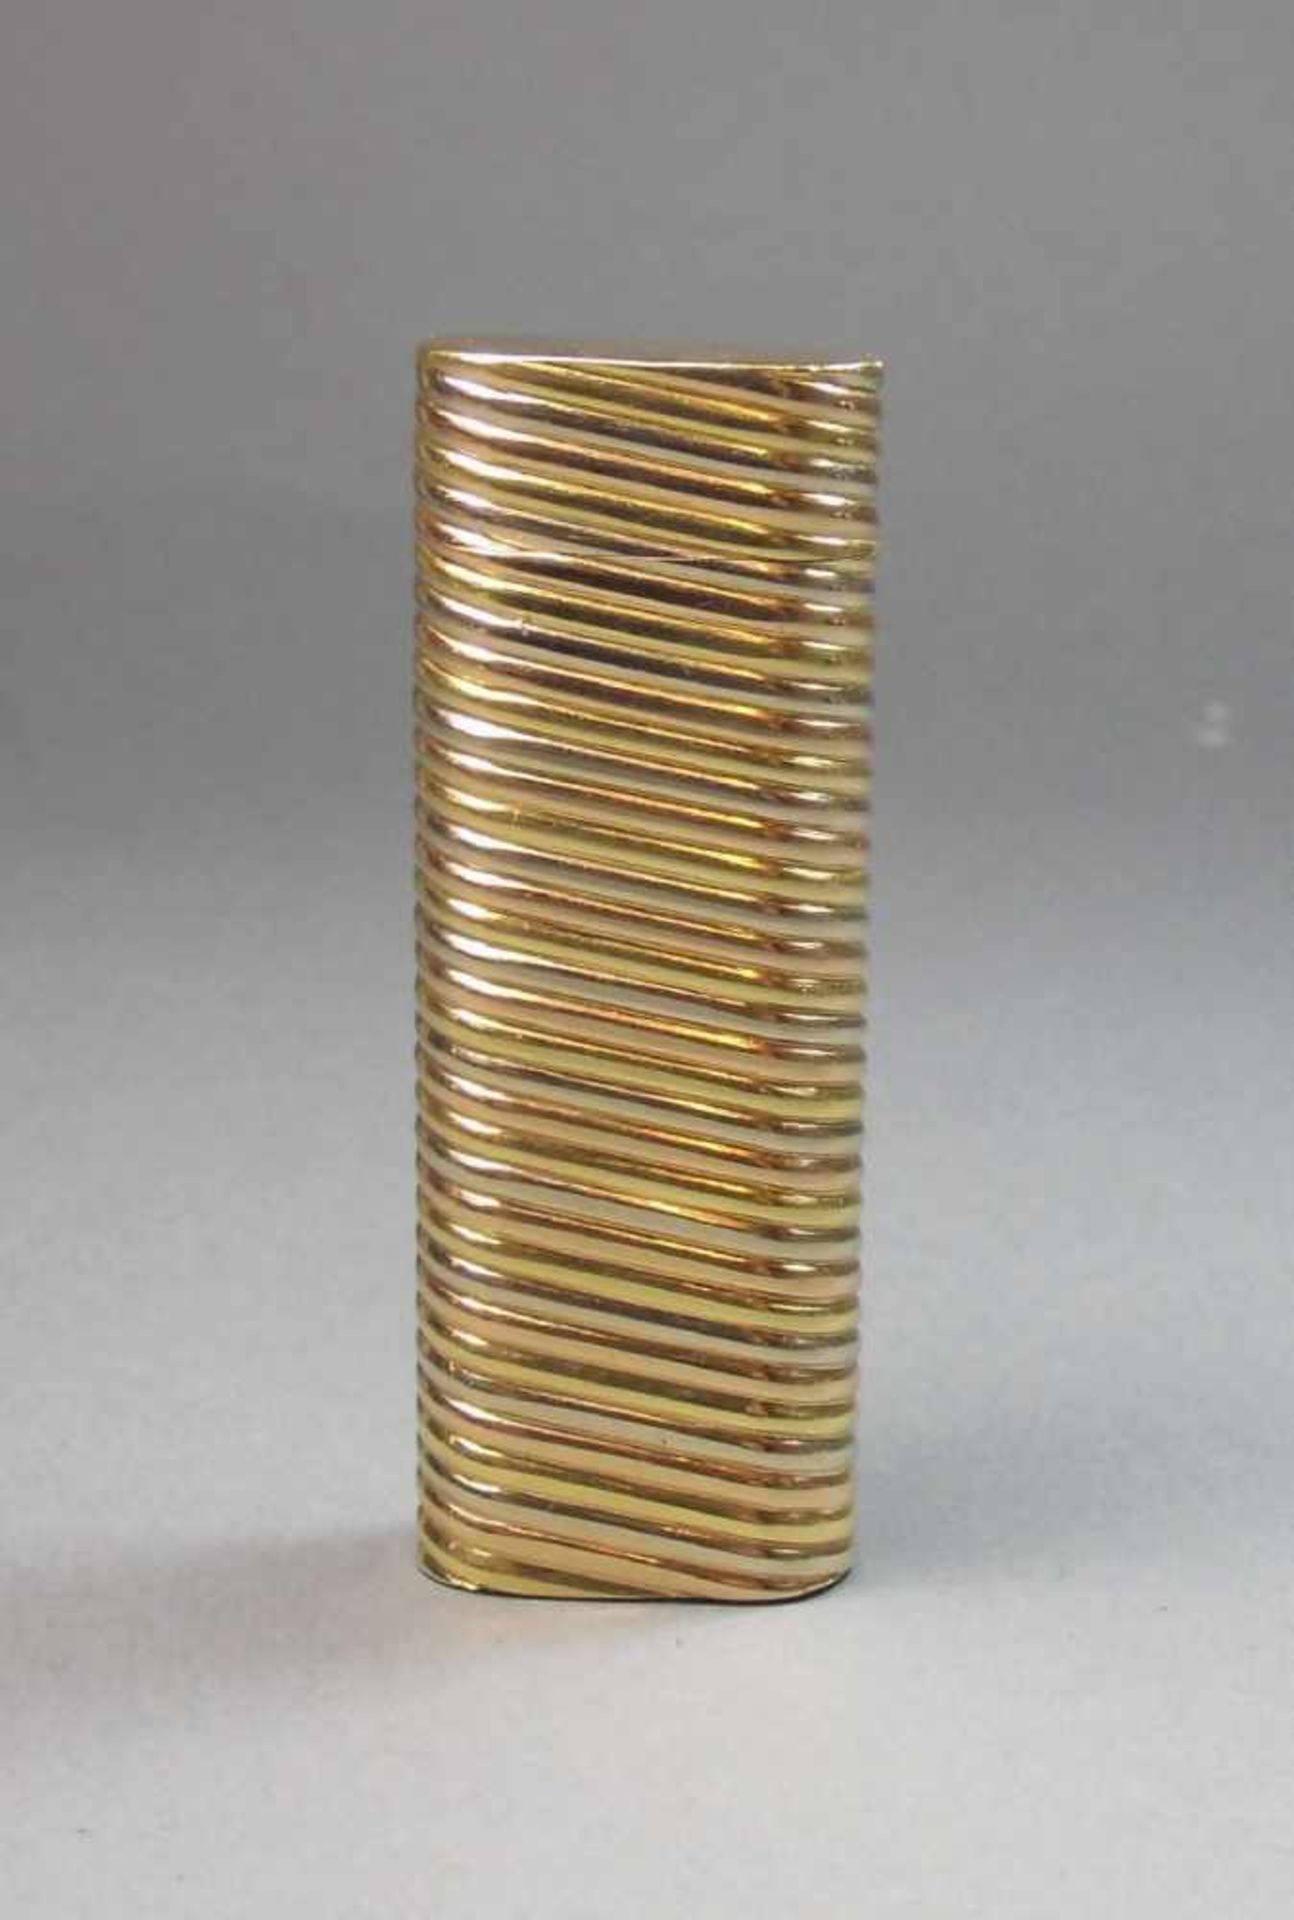 CARTIER FEUERZEUG / lighter, Gold (750er, 92 g), Frankreich, unter dem Stand Firmenstempel " Cartier